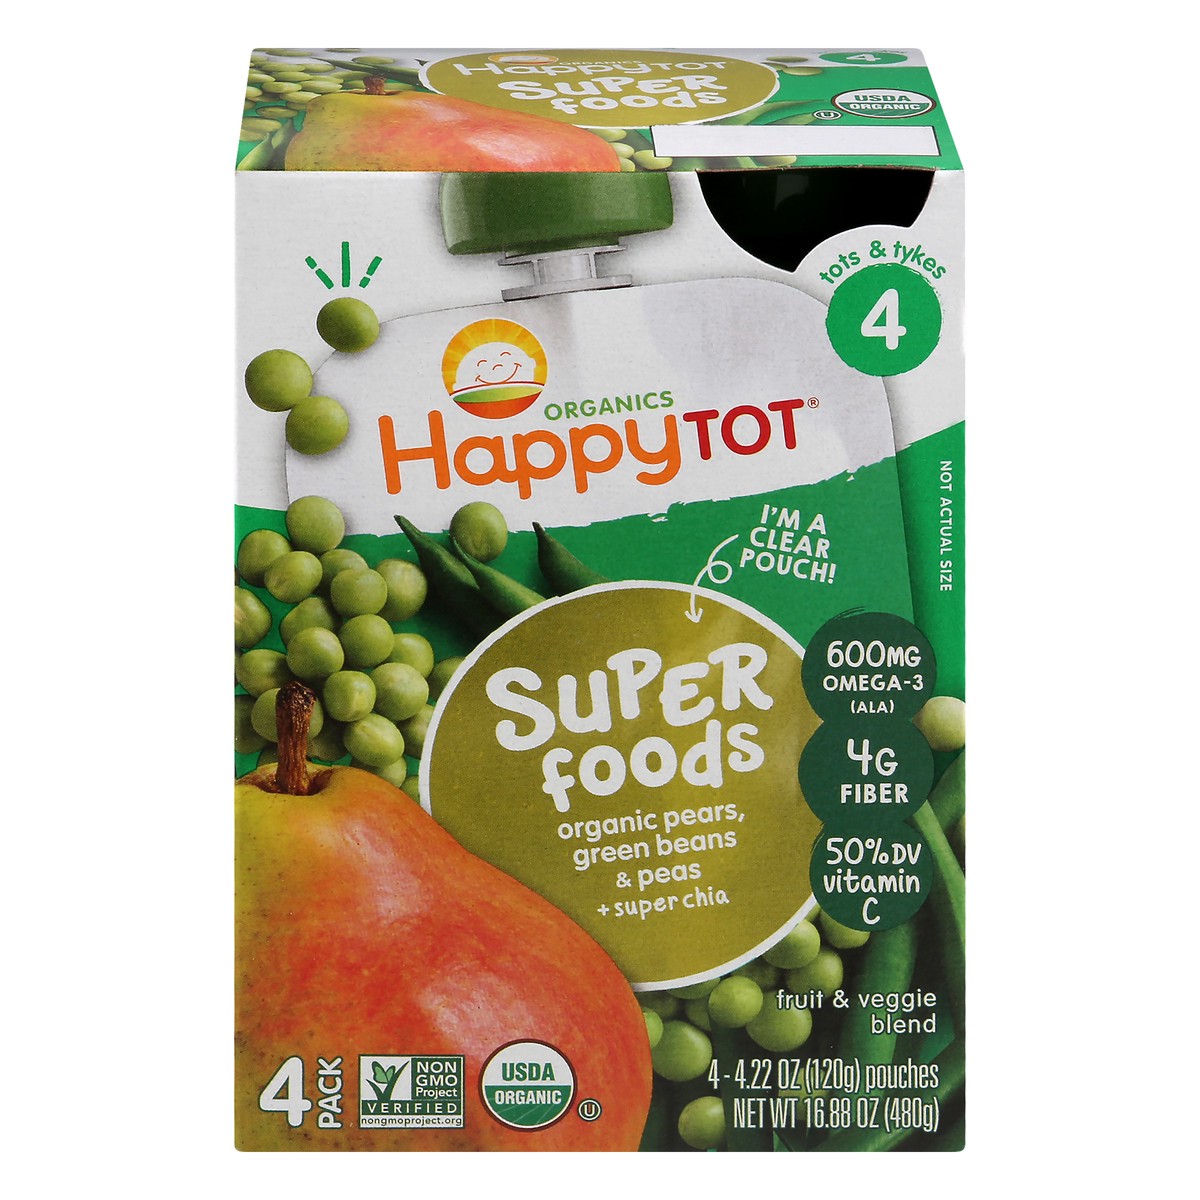 slide 1 of 12, Happy Tot Organics Super Foods 4 (Tots & Tykes) 4 Pack Organic Pears, Green Beans & Peas Fruit & Veggie Blend 4 ea, 4 ct